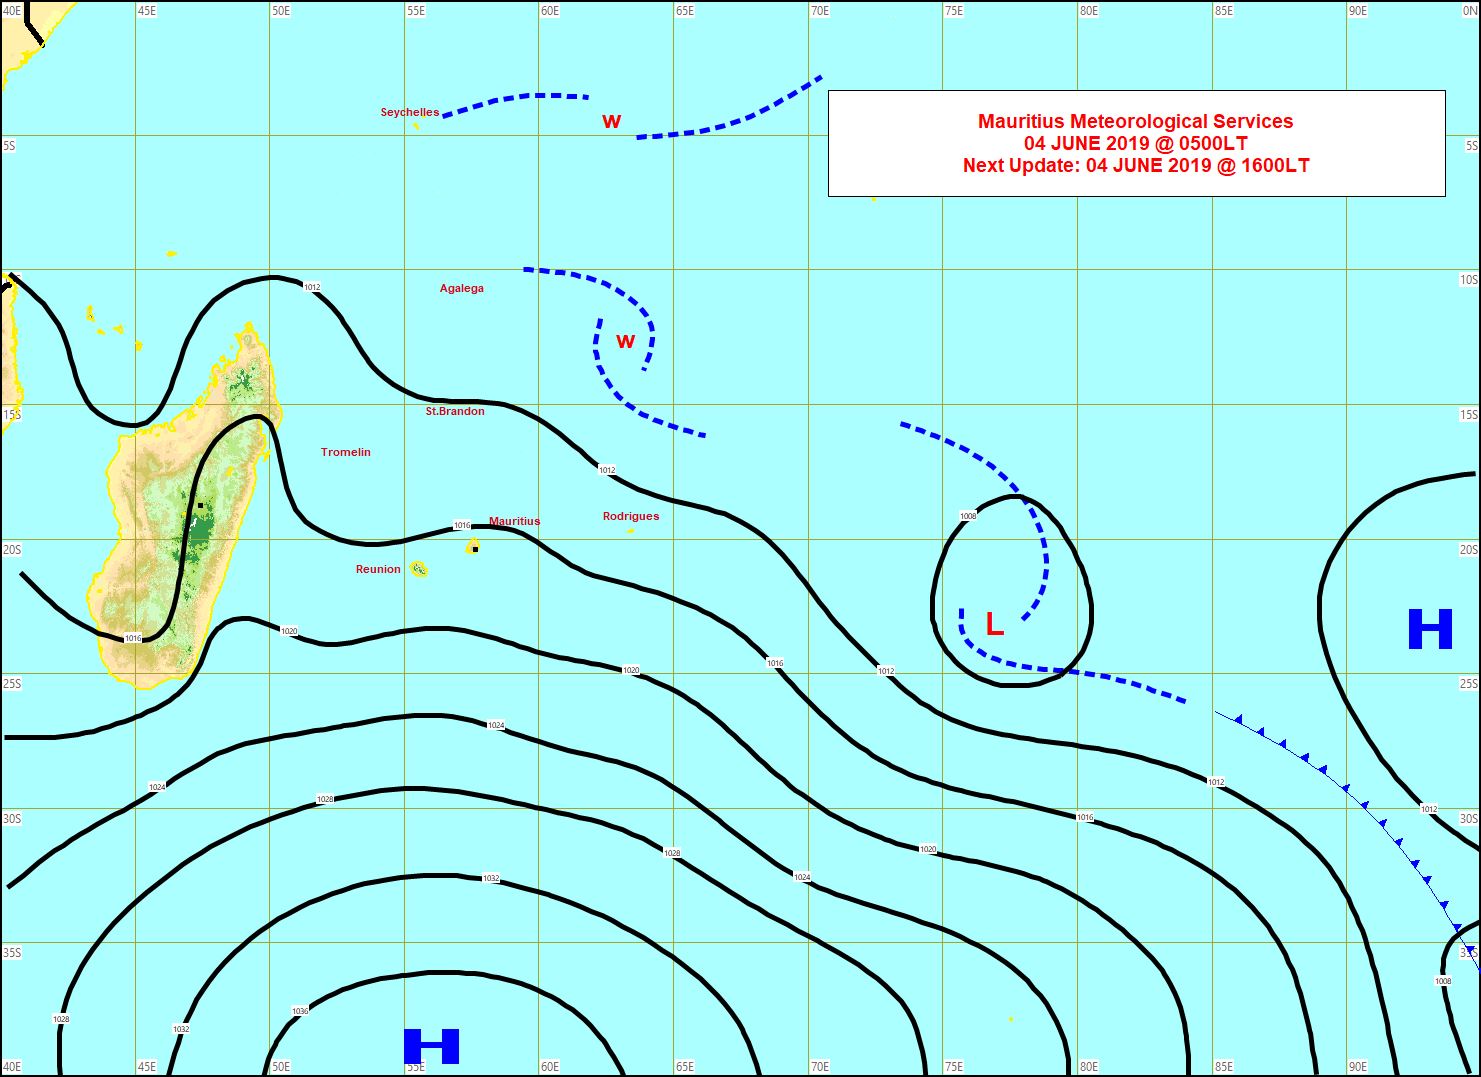 Analyse de la situation en surface à 4heures. L'anticyclone(H) est positionné au sud des Mascareignes et se décale lentement vers l'est. Les vents restent soutenus sur notre région et la mer houleuse. MMS